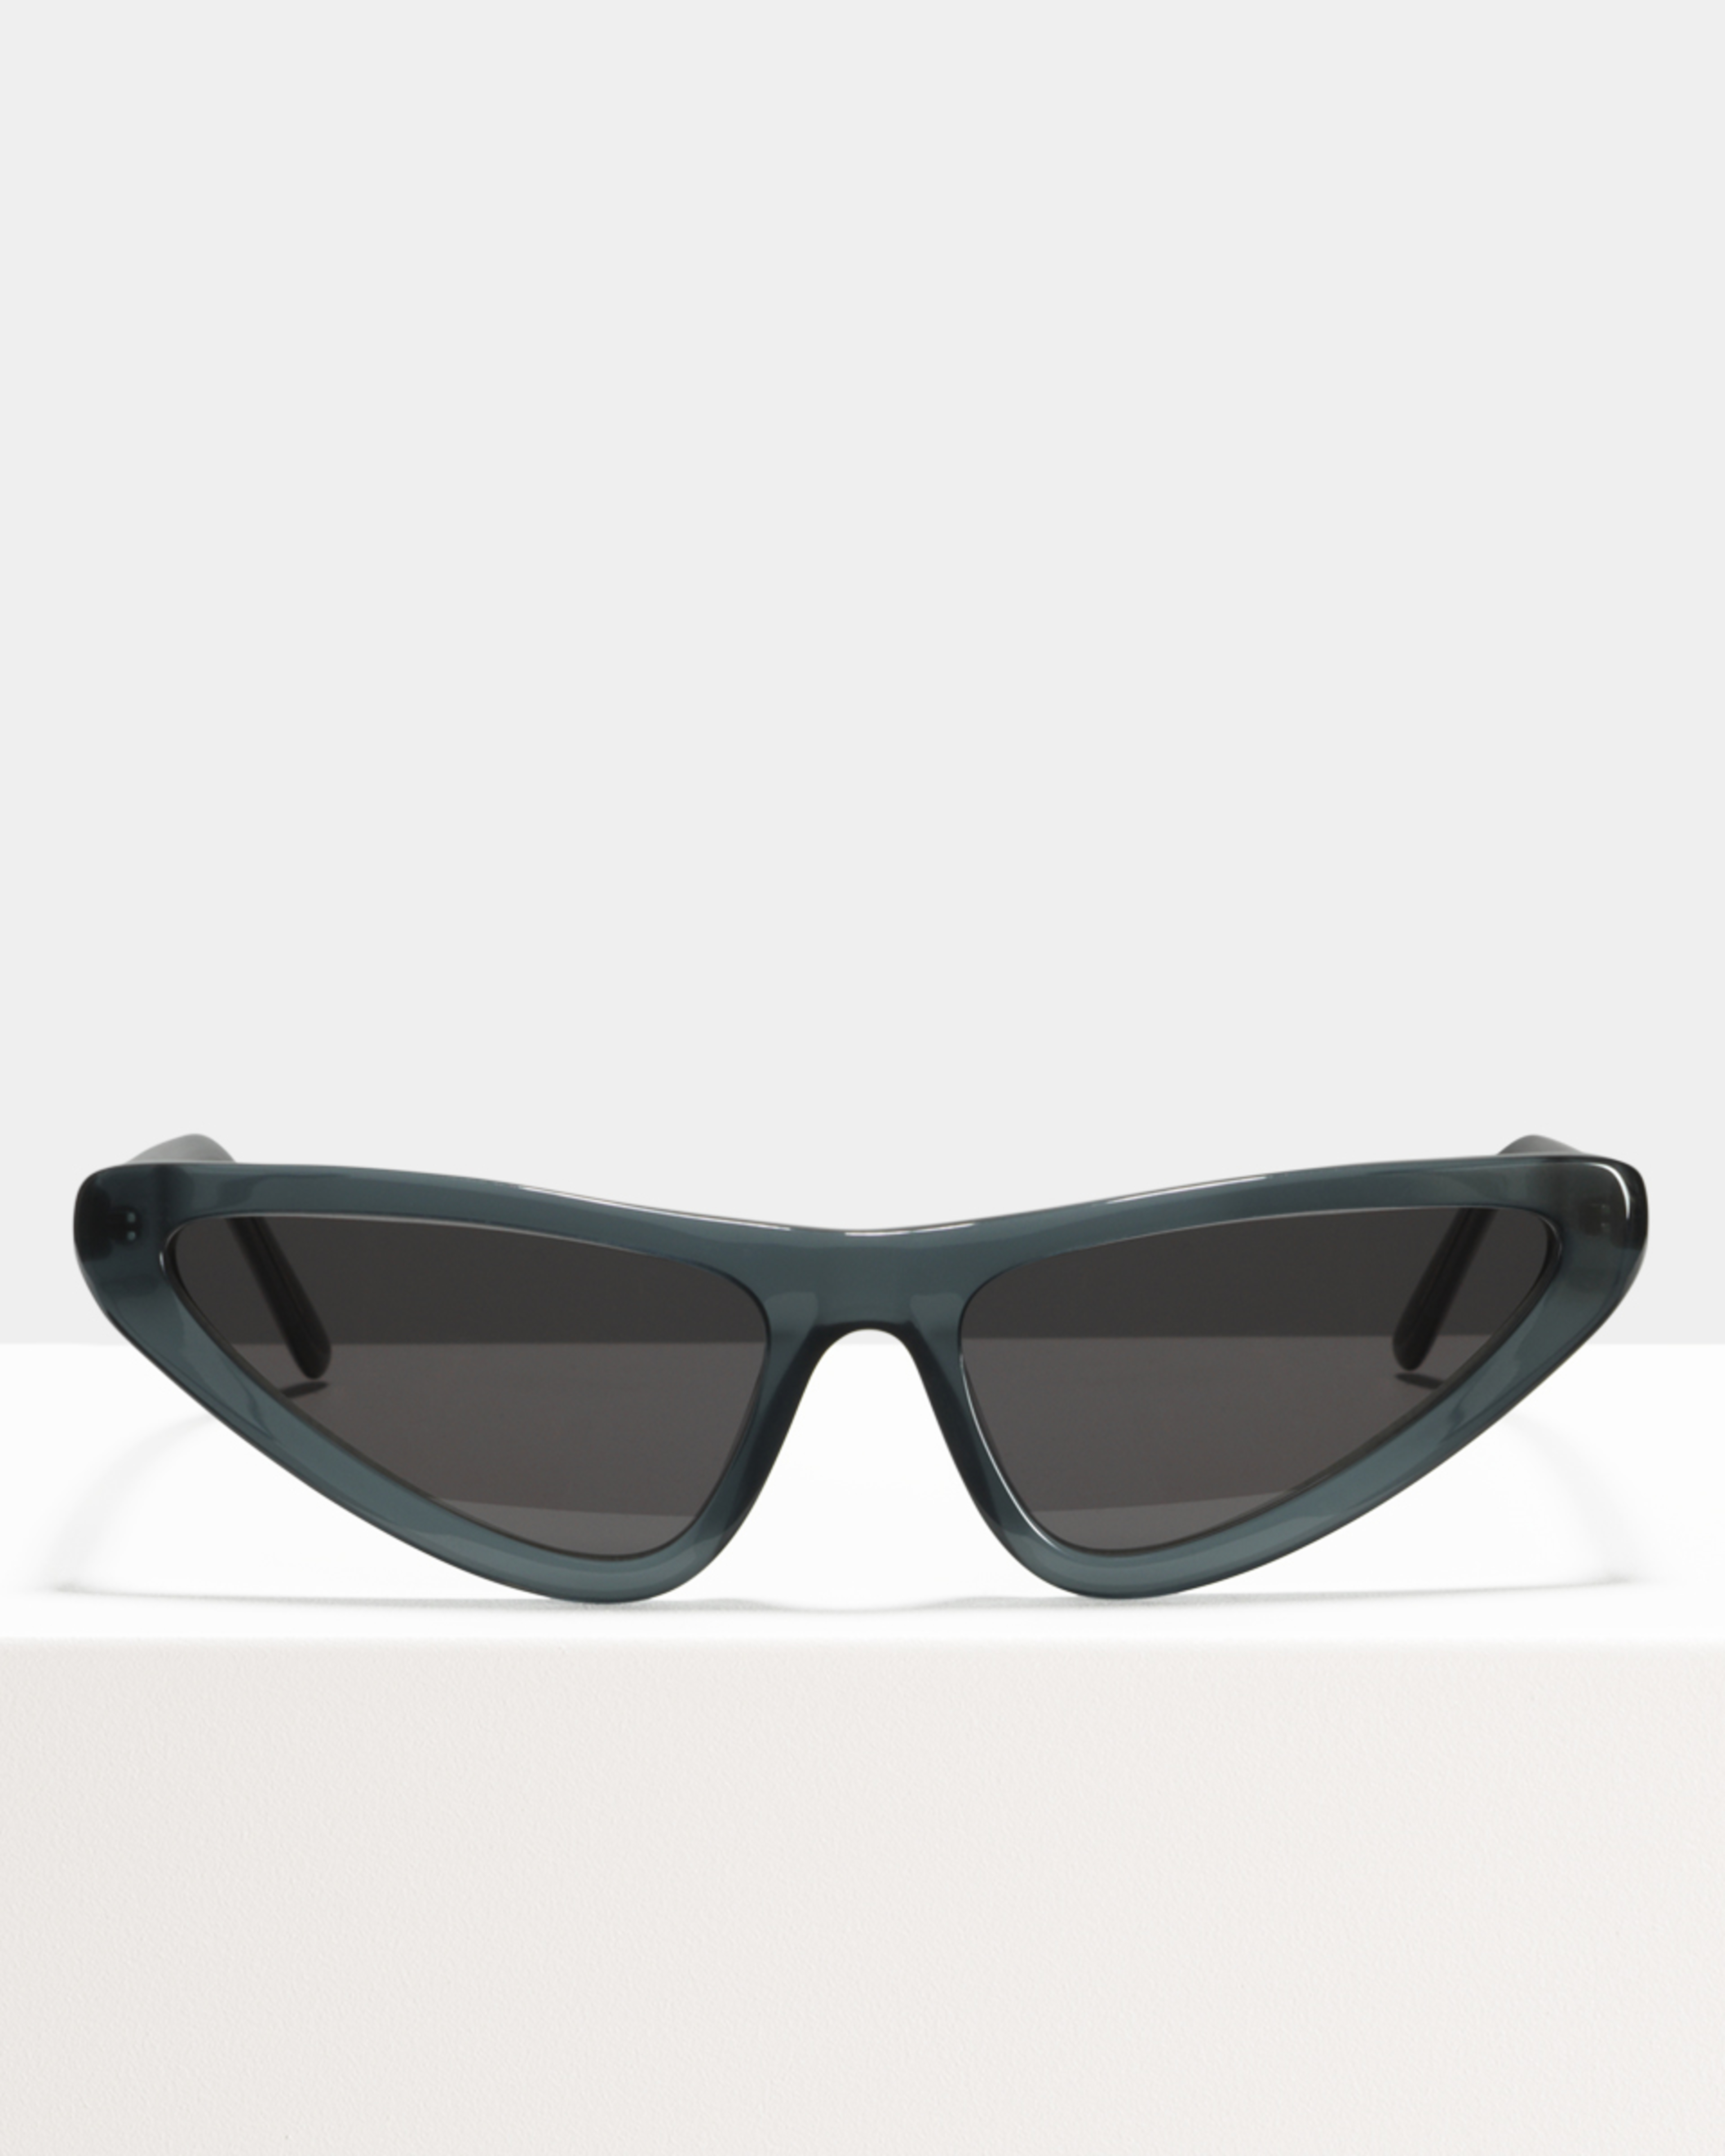 Ace & Tate Sunglasses |  Acetat in Blau, Grau